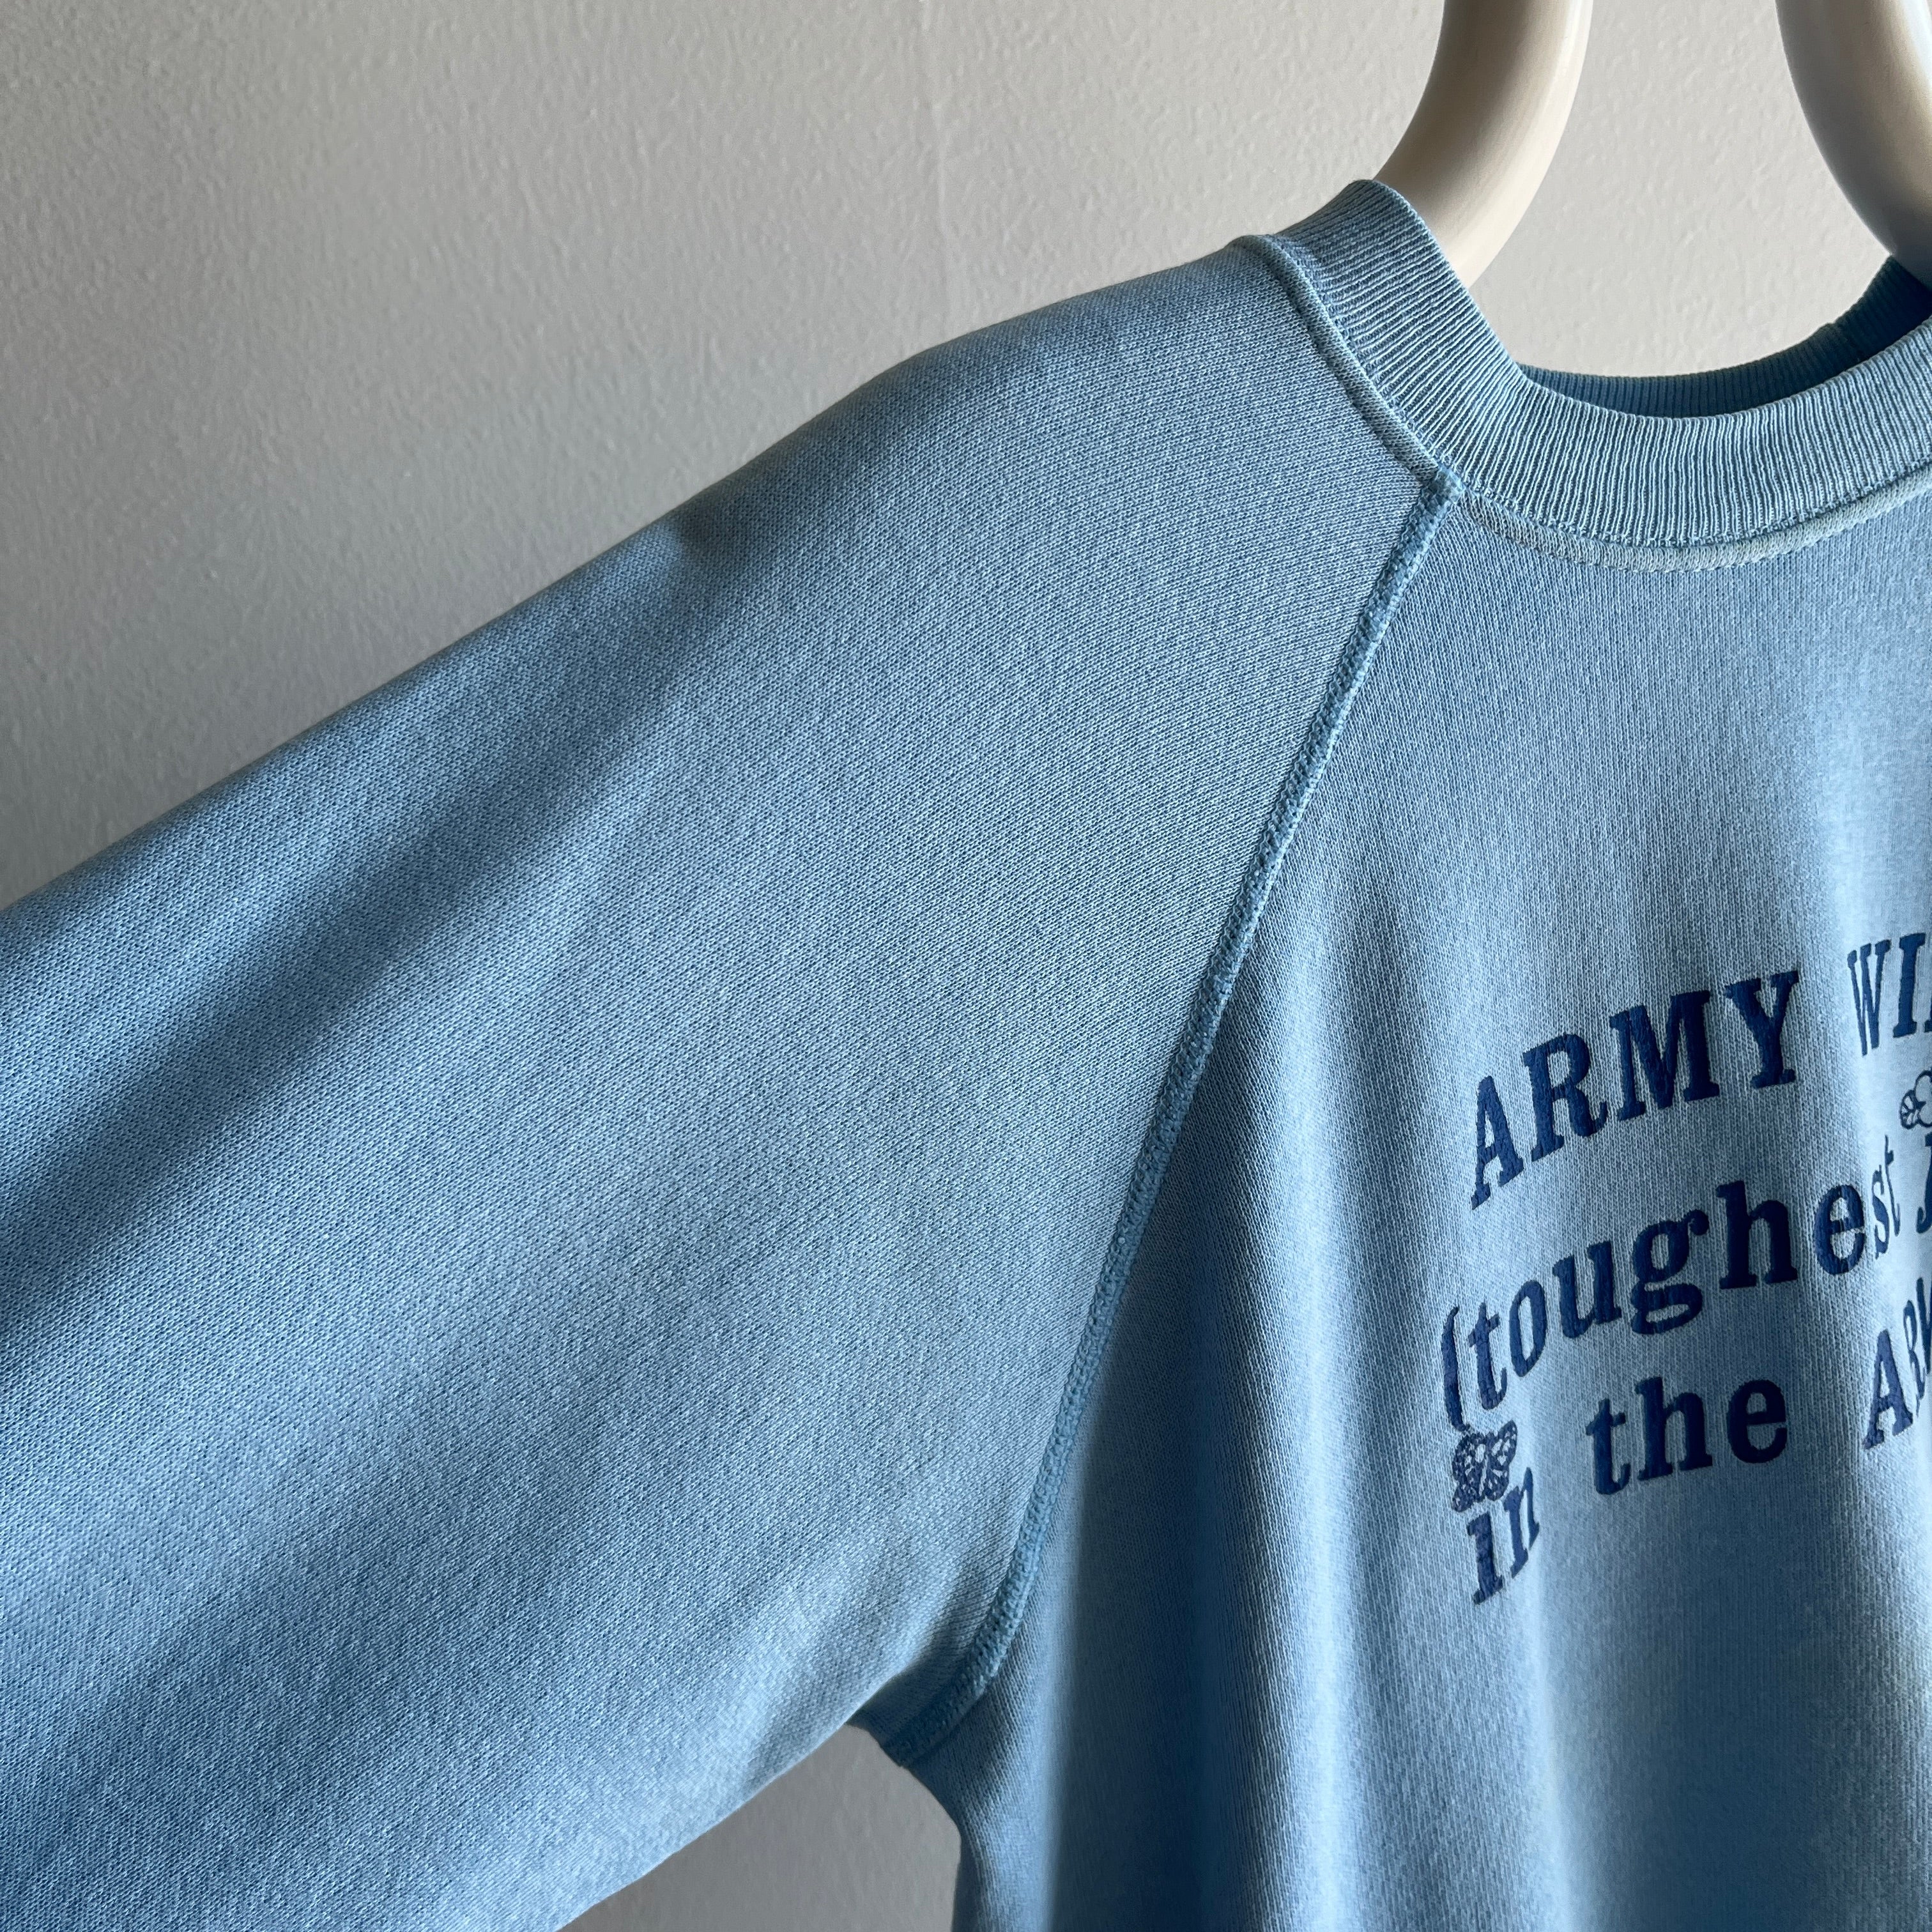 1980s Army Wife Sweatshirt